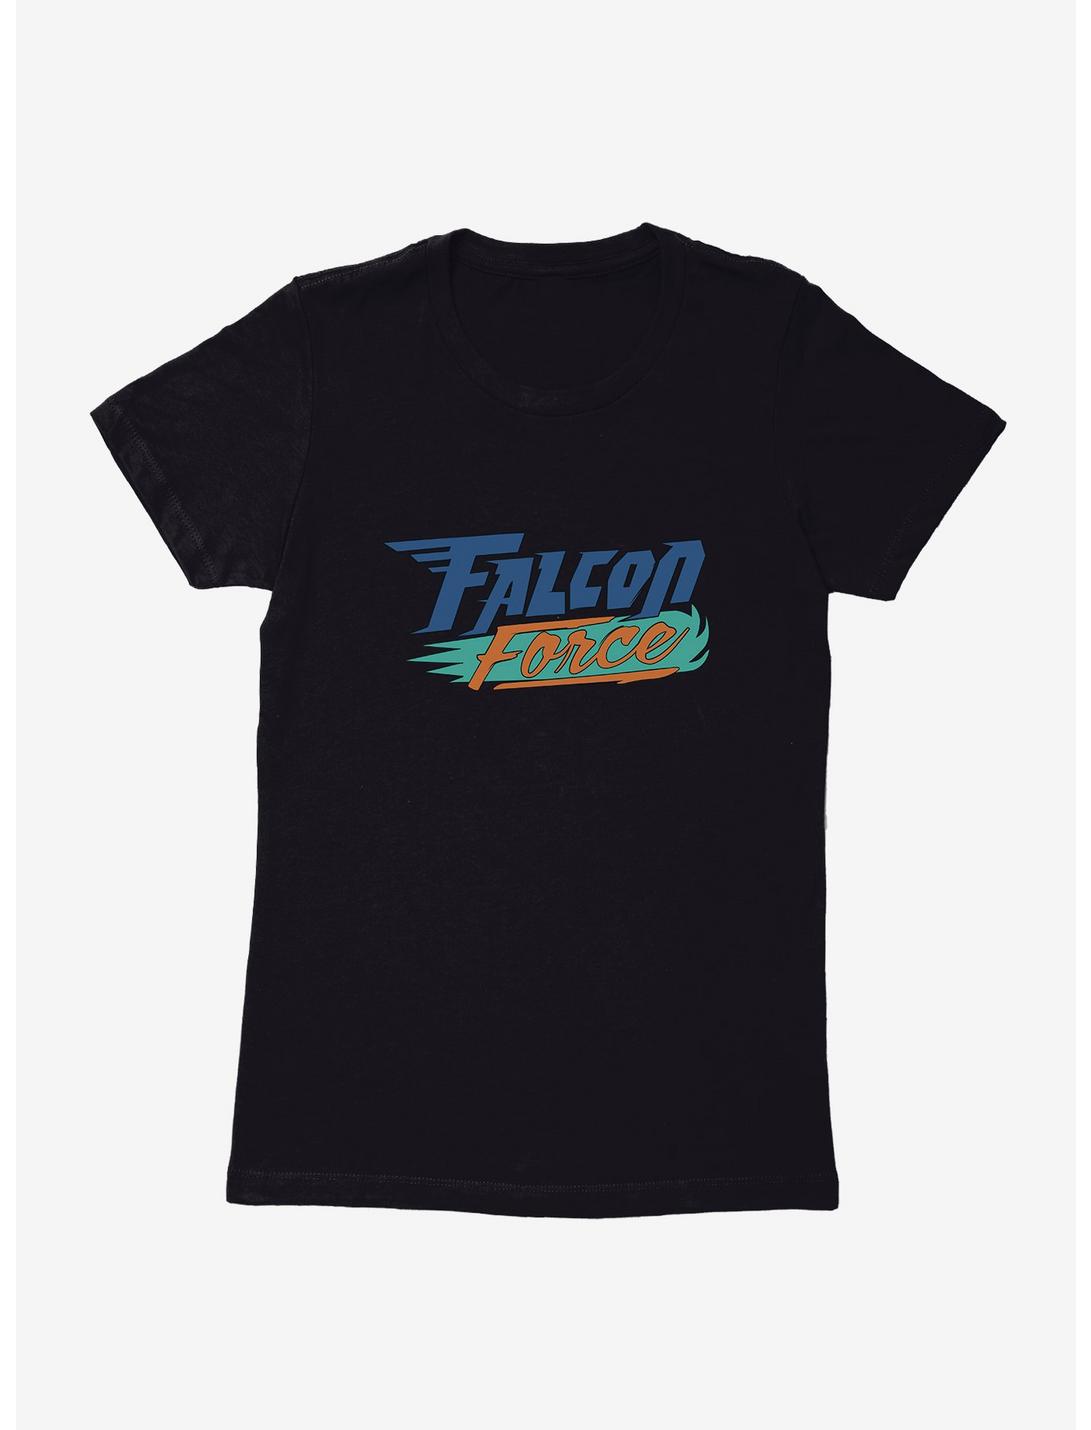 Scoob! Falcon Force Womens T-Shirt, BLACK, hi-res